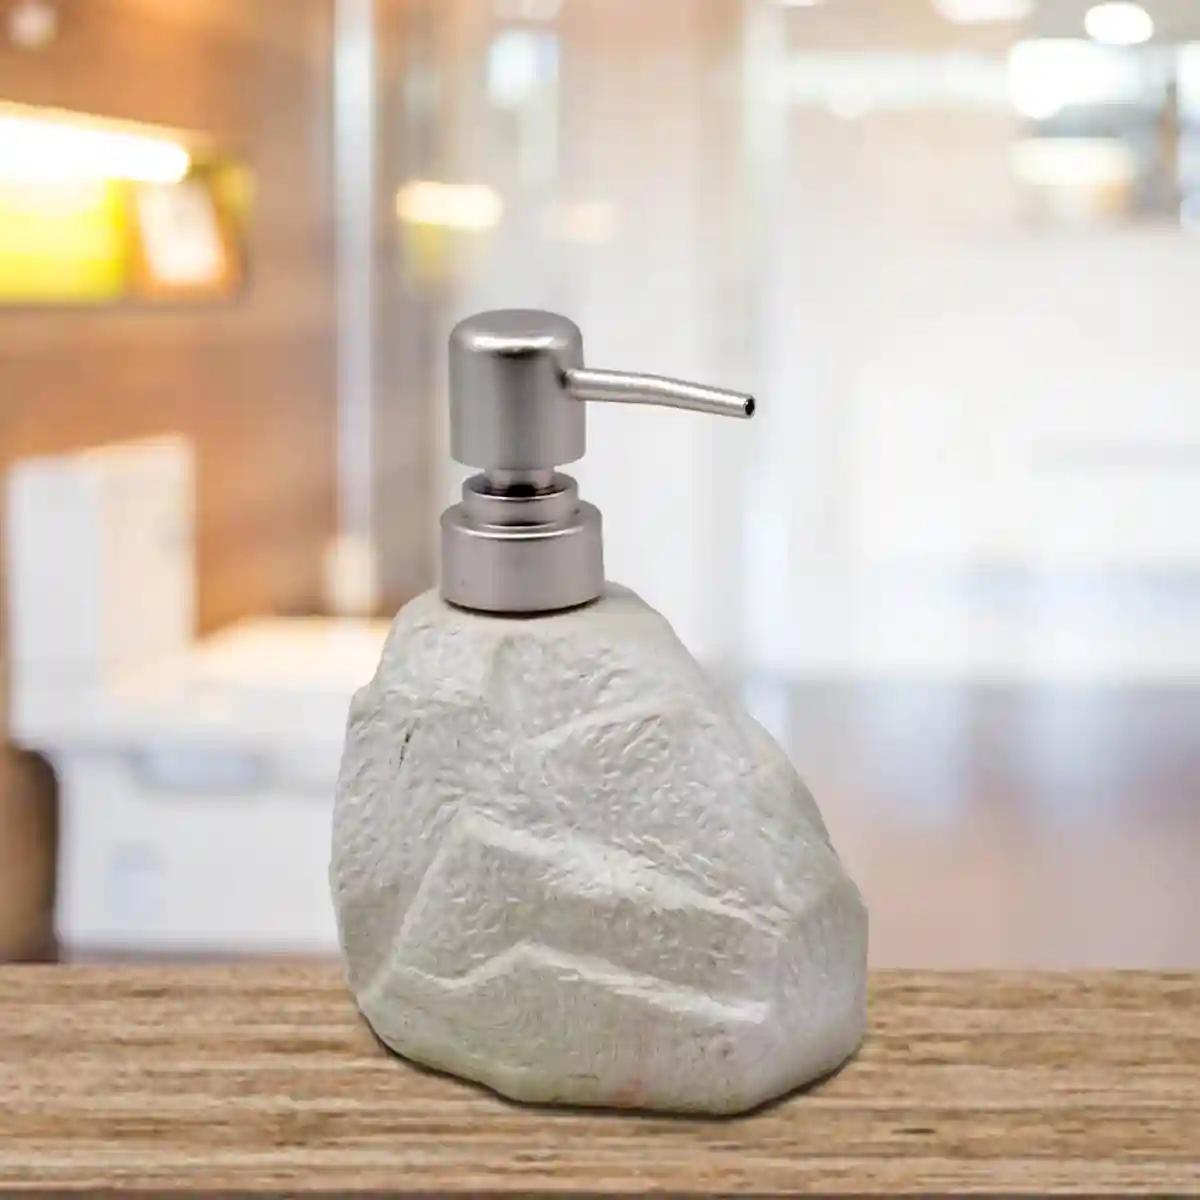 Kookee Ceramic Soap Dispenser for Bathroom handwash, refillable pump bottle for Kitchen hand wash basin, Set of 1 - Off White (7948)